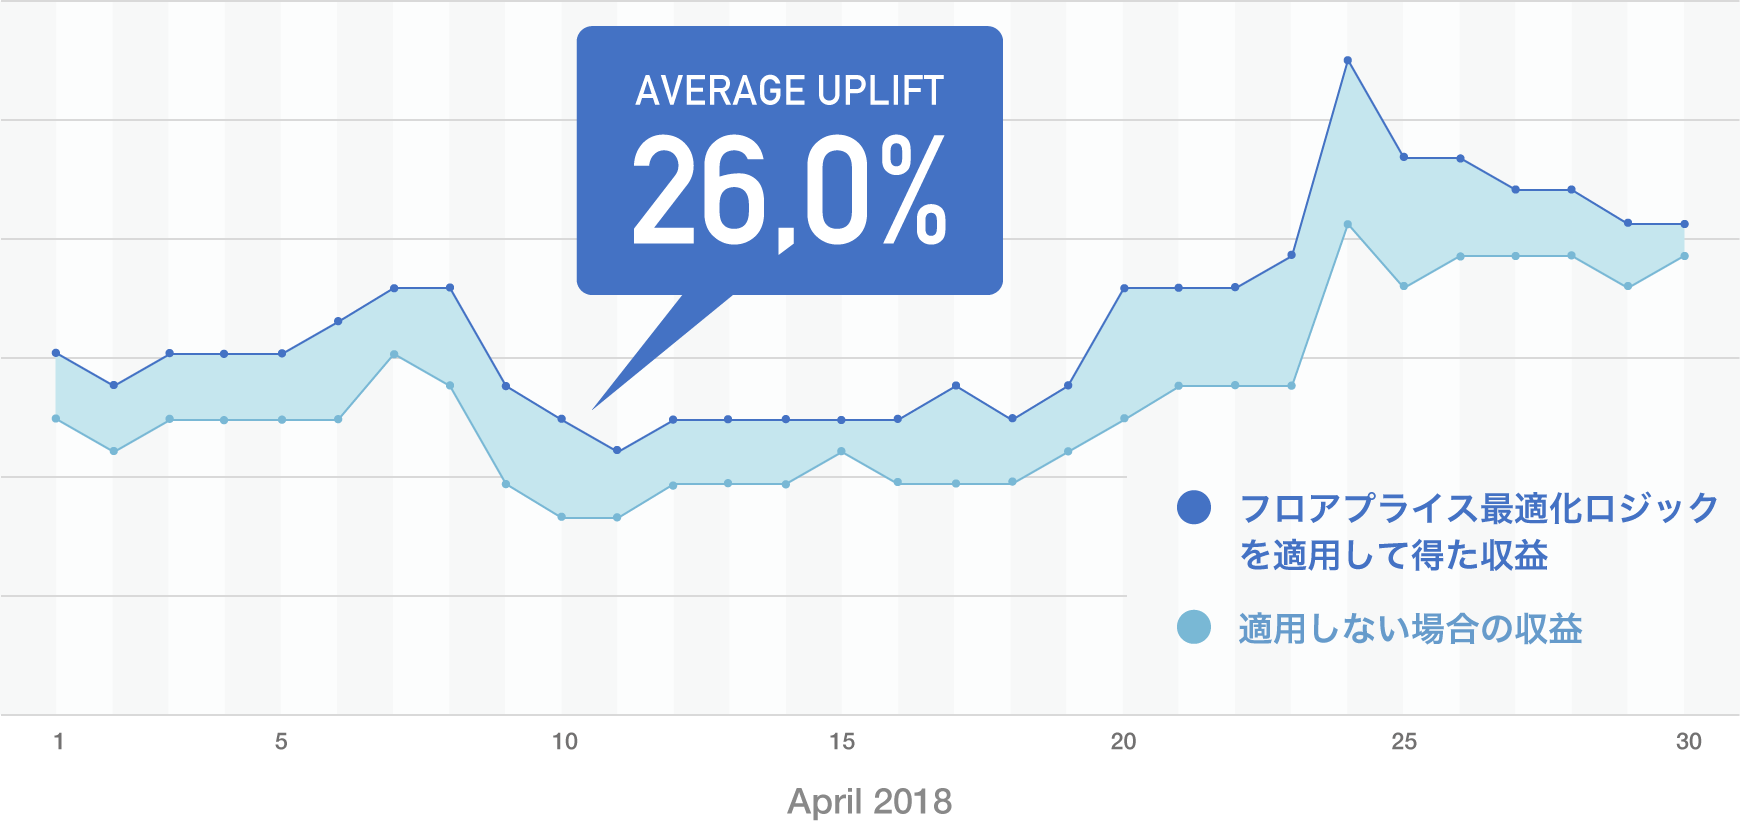 Average Uplift